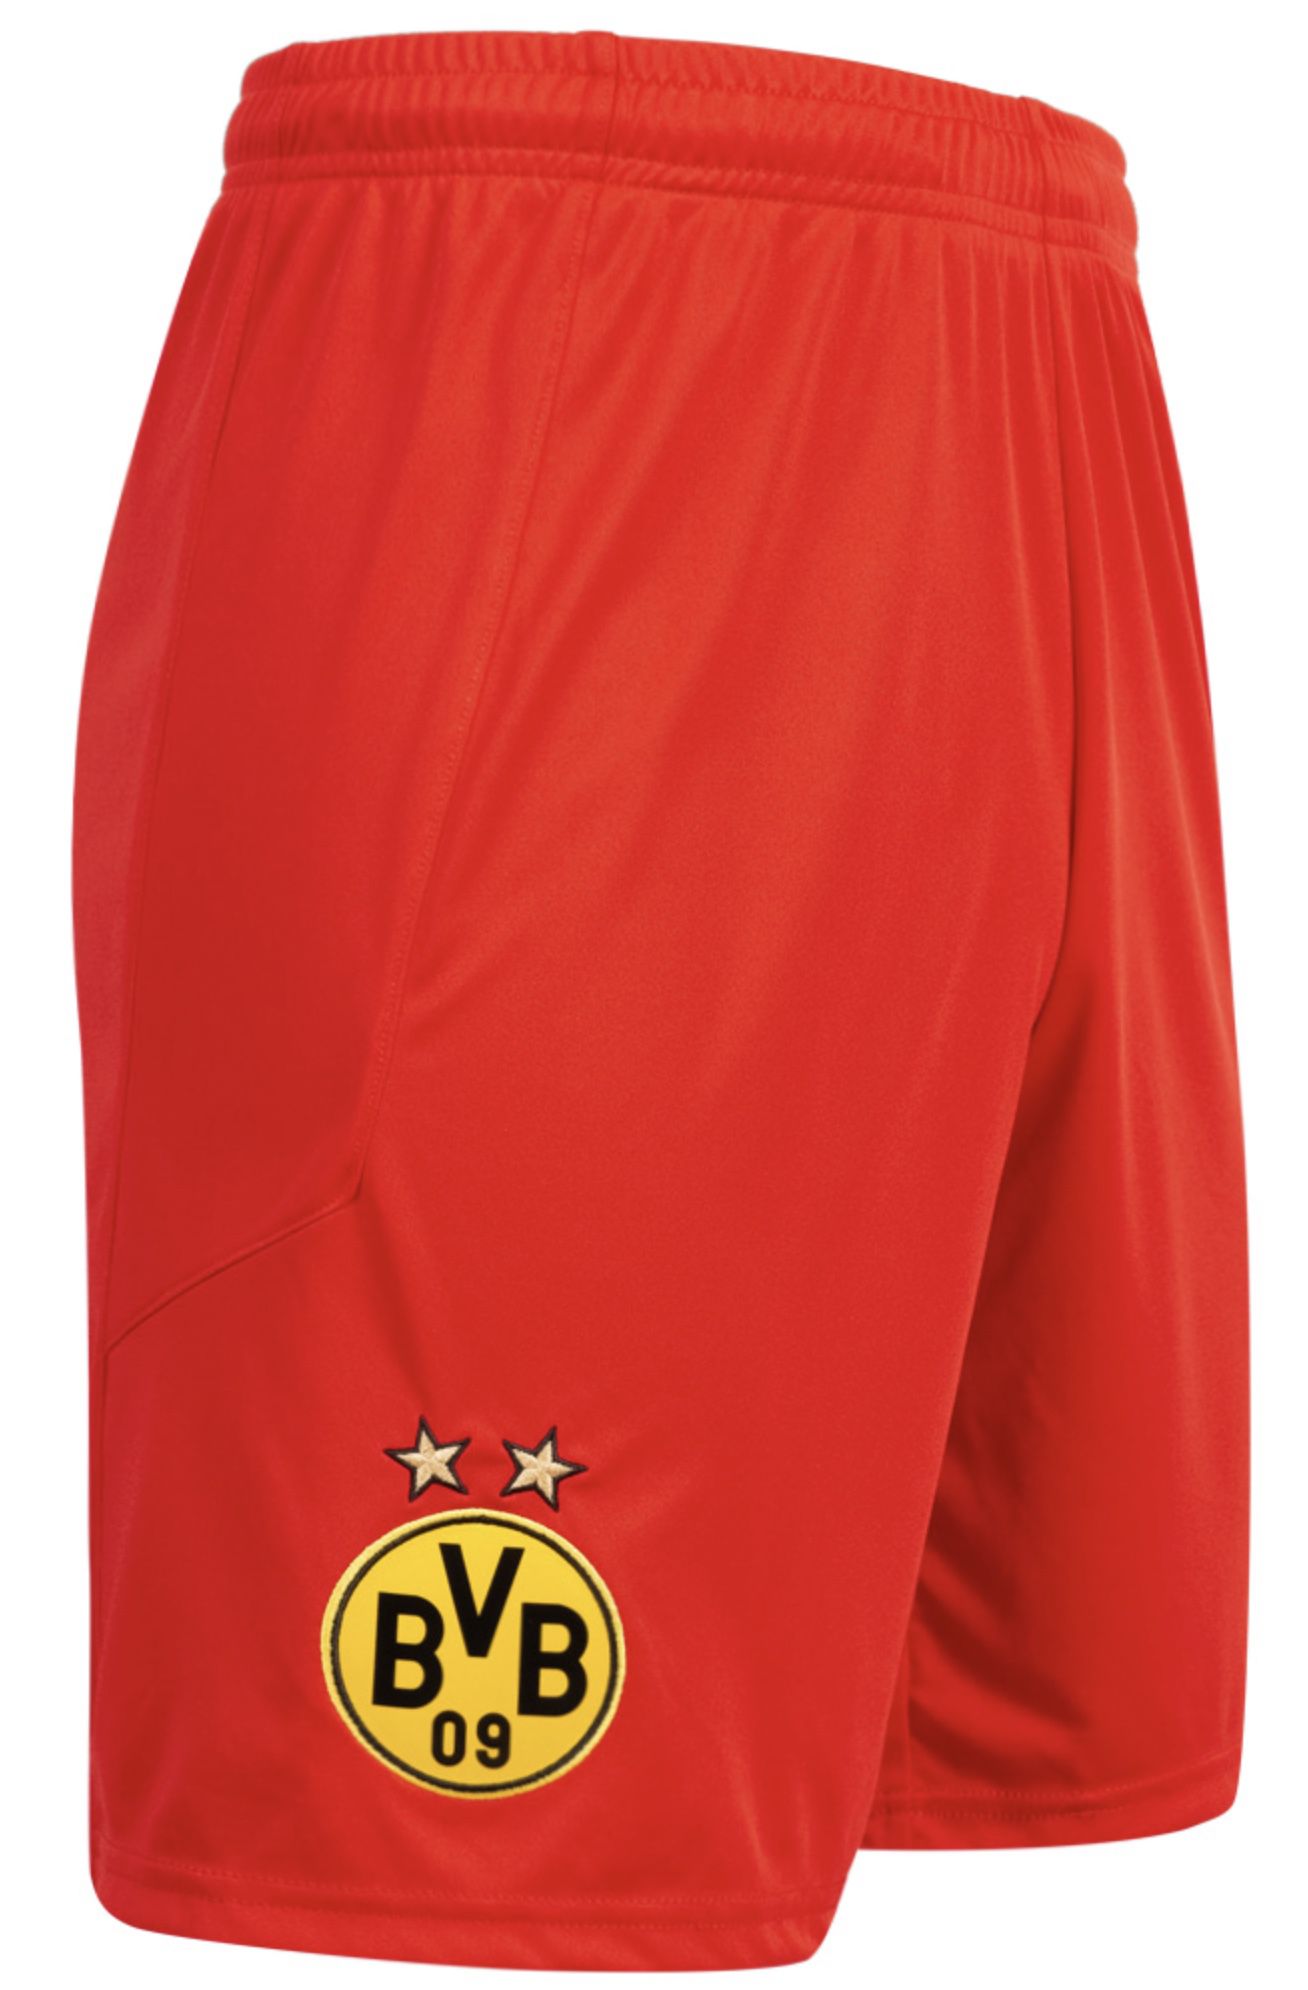 Puma Borussia Dortmund Herren Torwart Shorts für 10,61€ (statt 16€)